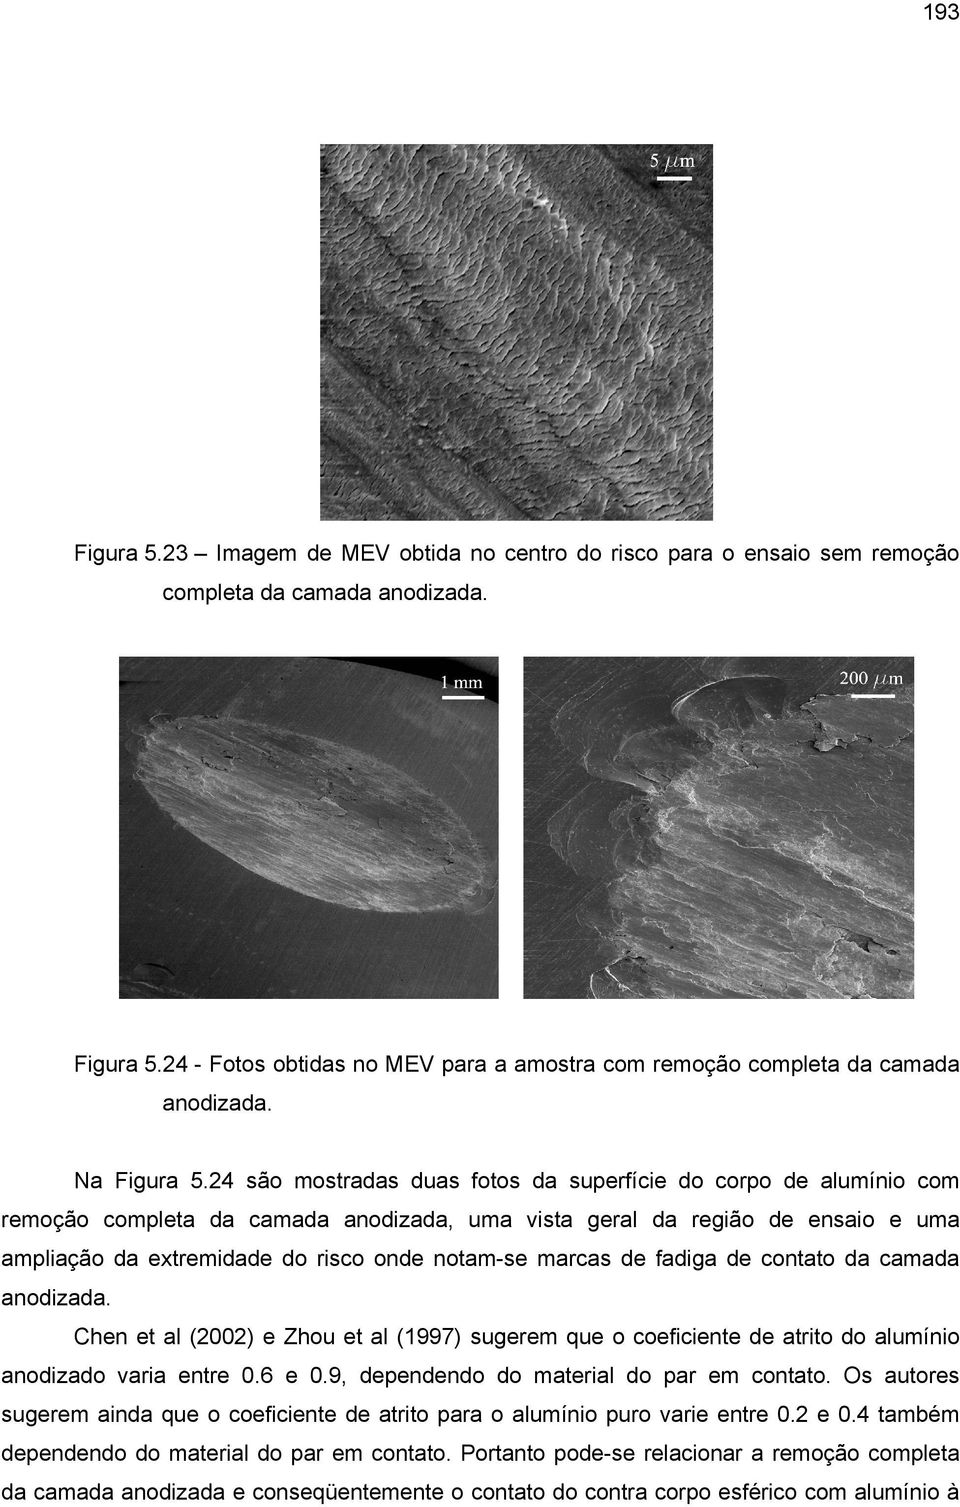 24 são mostradas duas fotos da superfície do corpo de alumínio com remoção completa da camada anodizada, uma vista geral da região de ensaio e uma ampliação da extremidade do risco onde notam-se